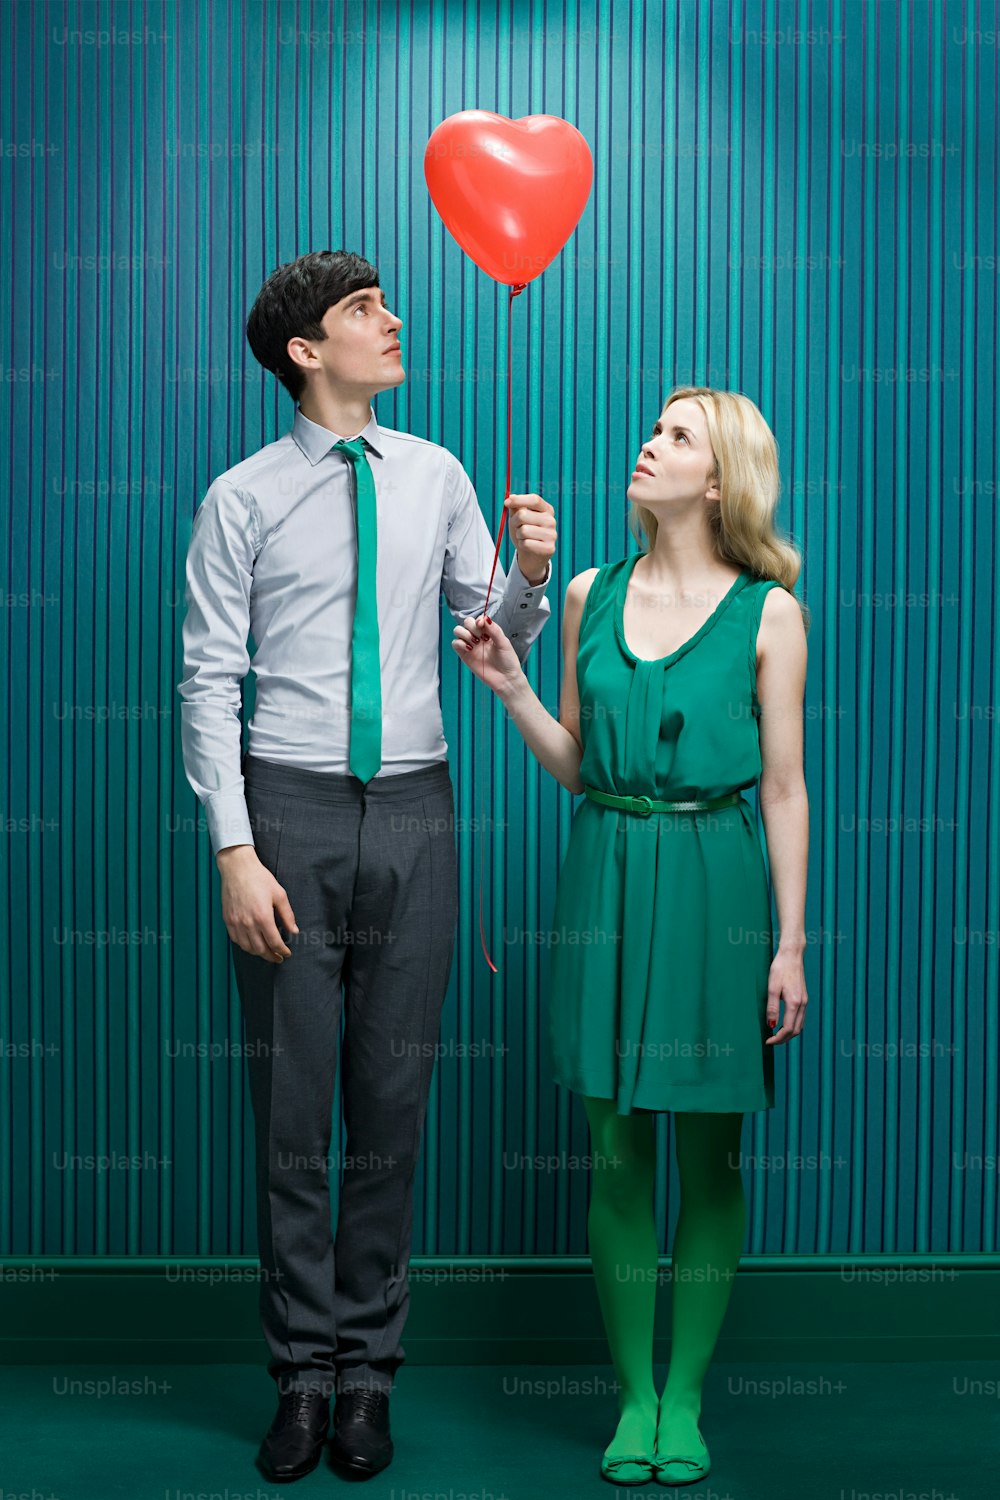 Un hombre y una mujer sosteniendo un globo rojo